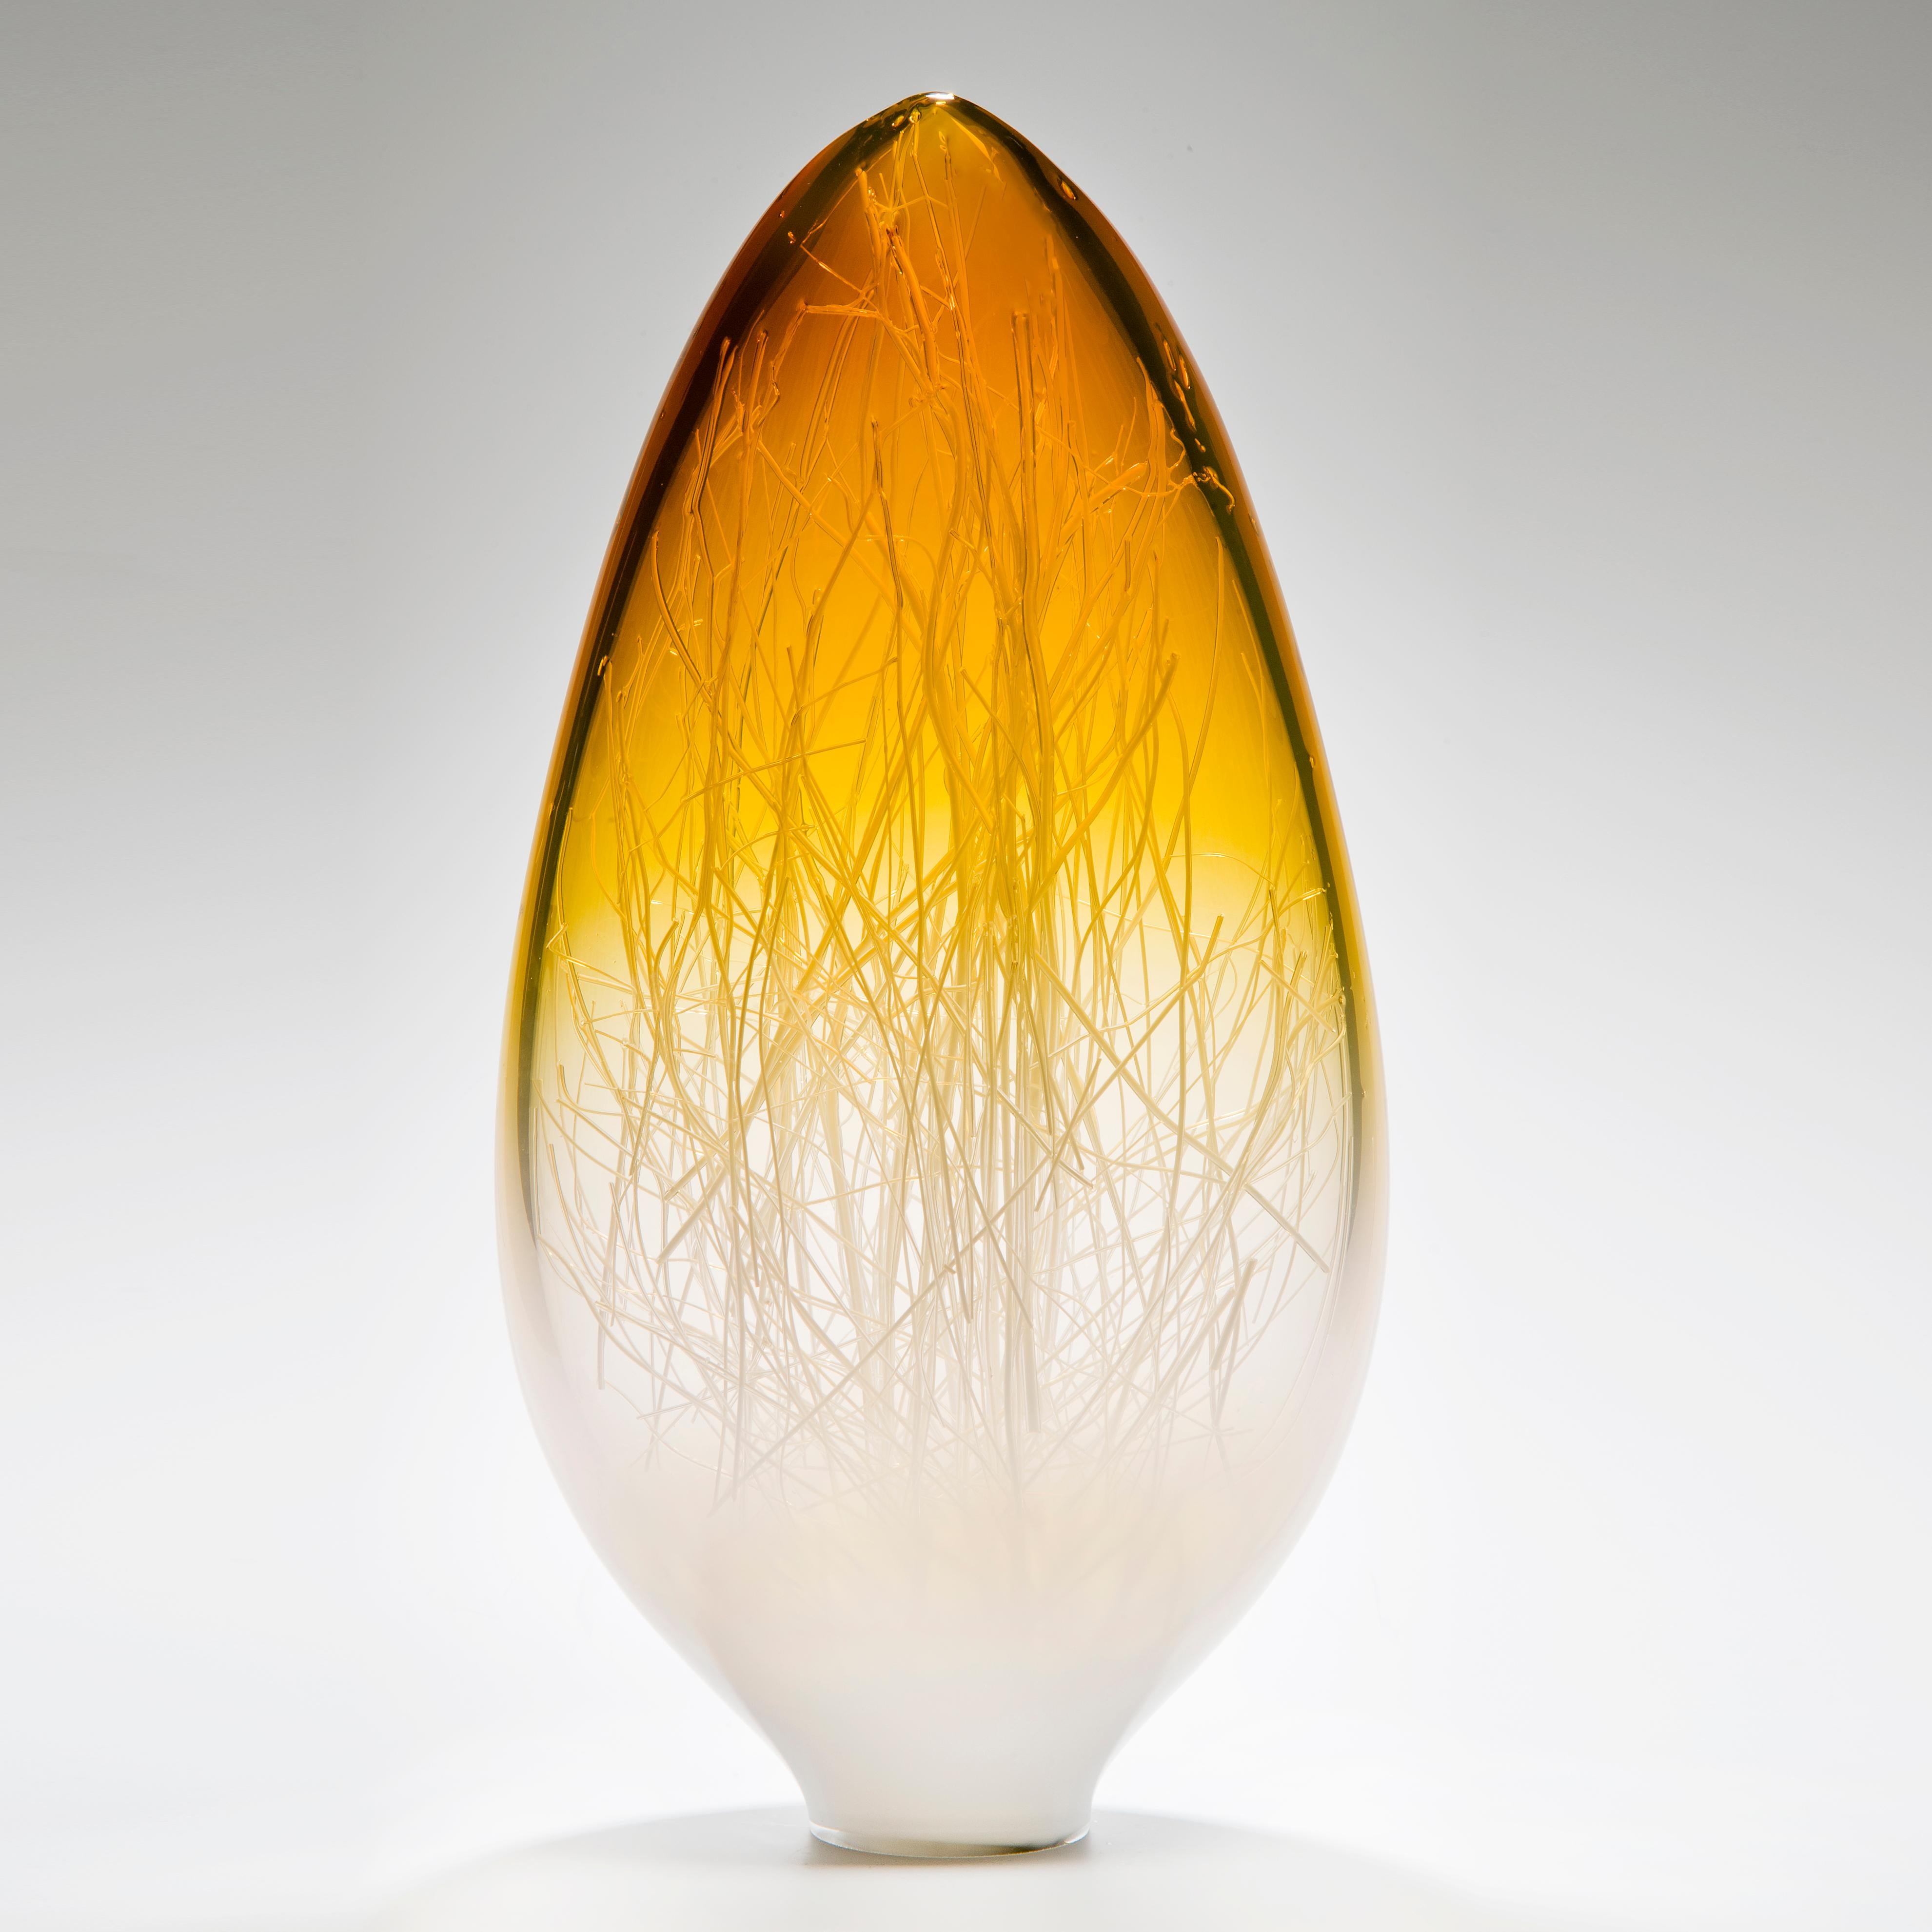 Panicum in Amber and White est une sculpture unique en verre blanc, clair et ambre vif, réalisée par les artistes Hanne Enemark (danoise) et Louis Thompson (britannique) en collaboration. La forme extérieure en verre contient une multitude de fines